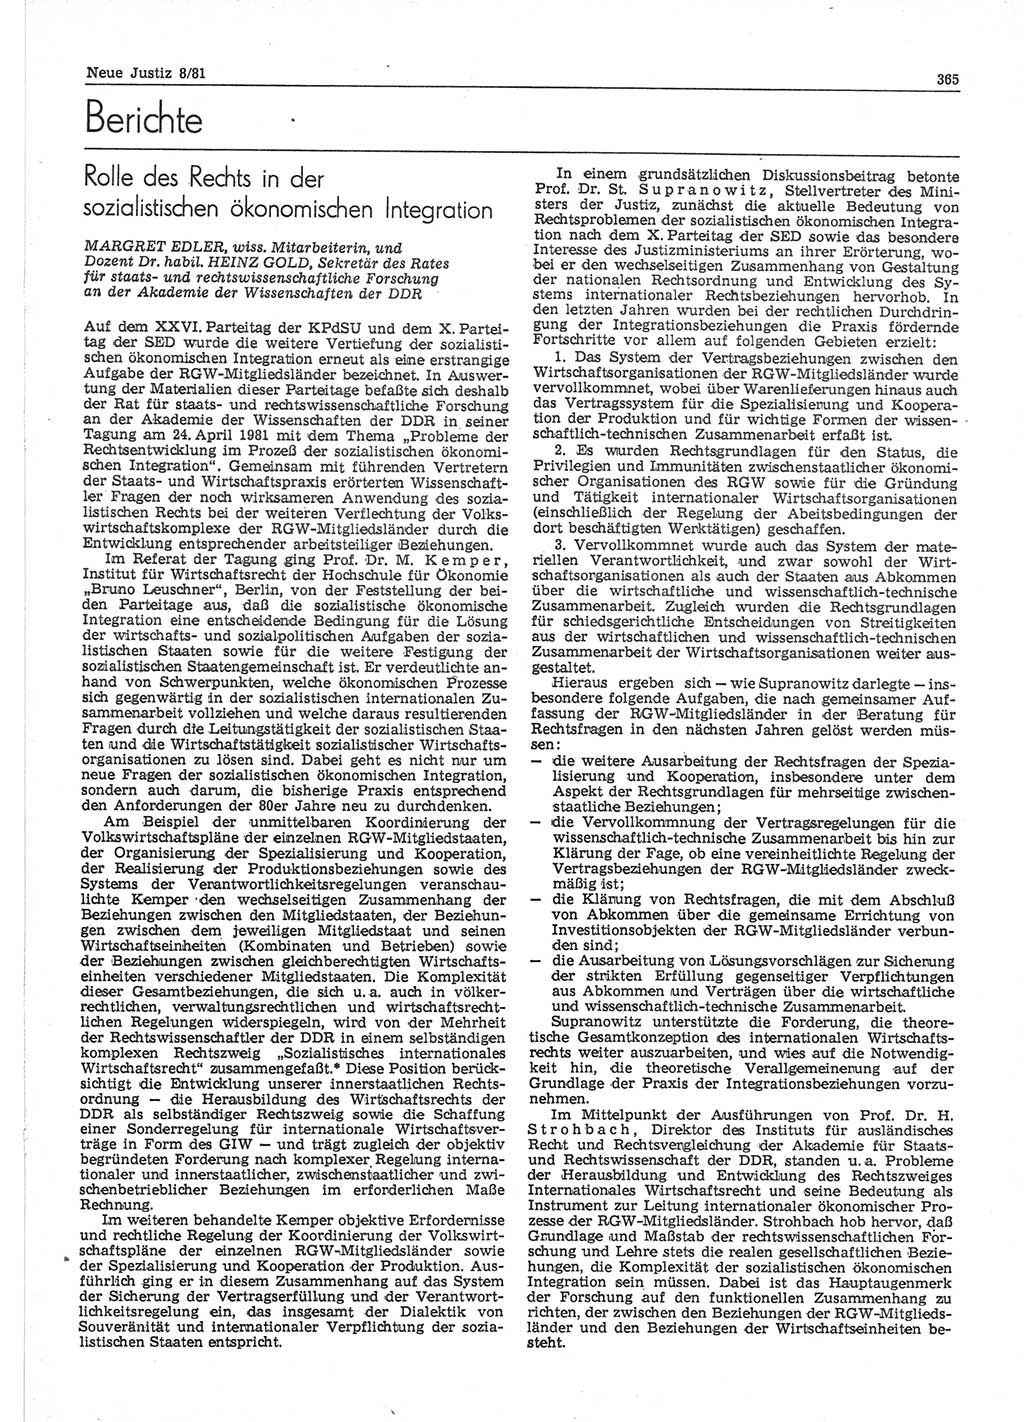 Neue Justiz (NJ), Zeitschrift für sozialistisches Recht und Gesetzlichkeit [Deutsche Demokratische Republik (DDR)], 35. Jahrgang 1981, Seite 365 (NJ DDR 1981, S. 365)